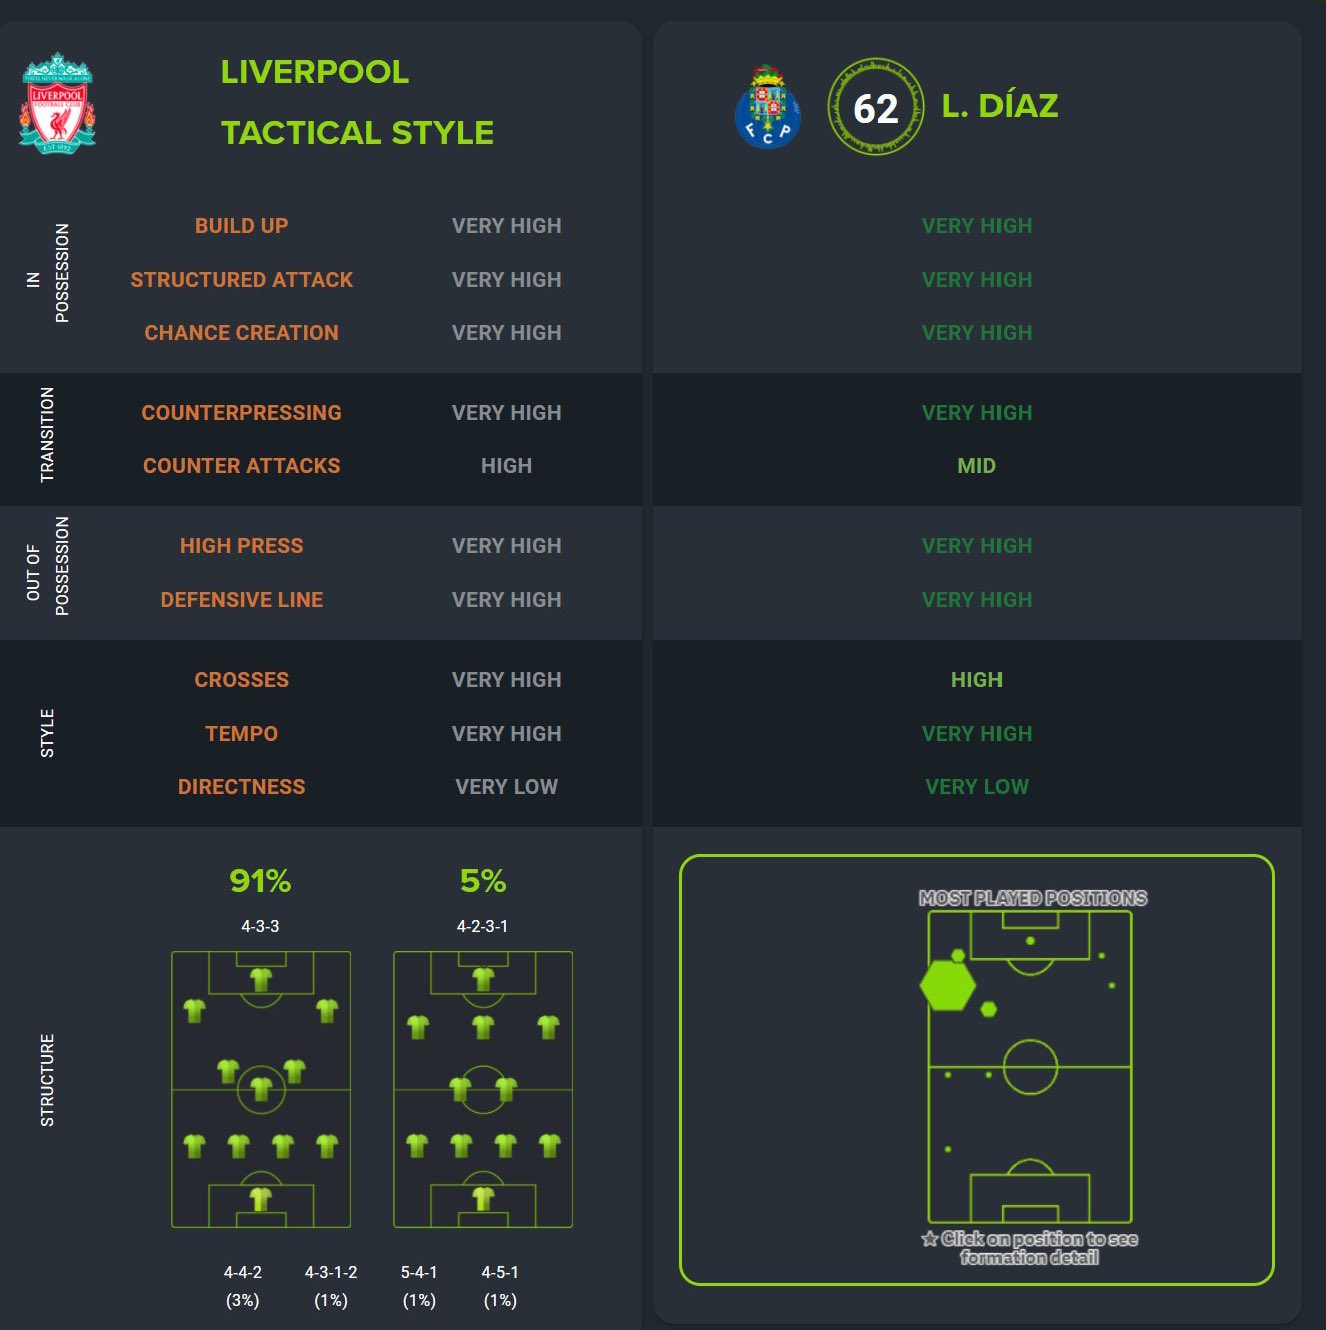 Jurgen Klopp'a özel röportaj: Luis Diaz'ın Liverpool'daki etkisi açıklandı | Futbol Haberleri